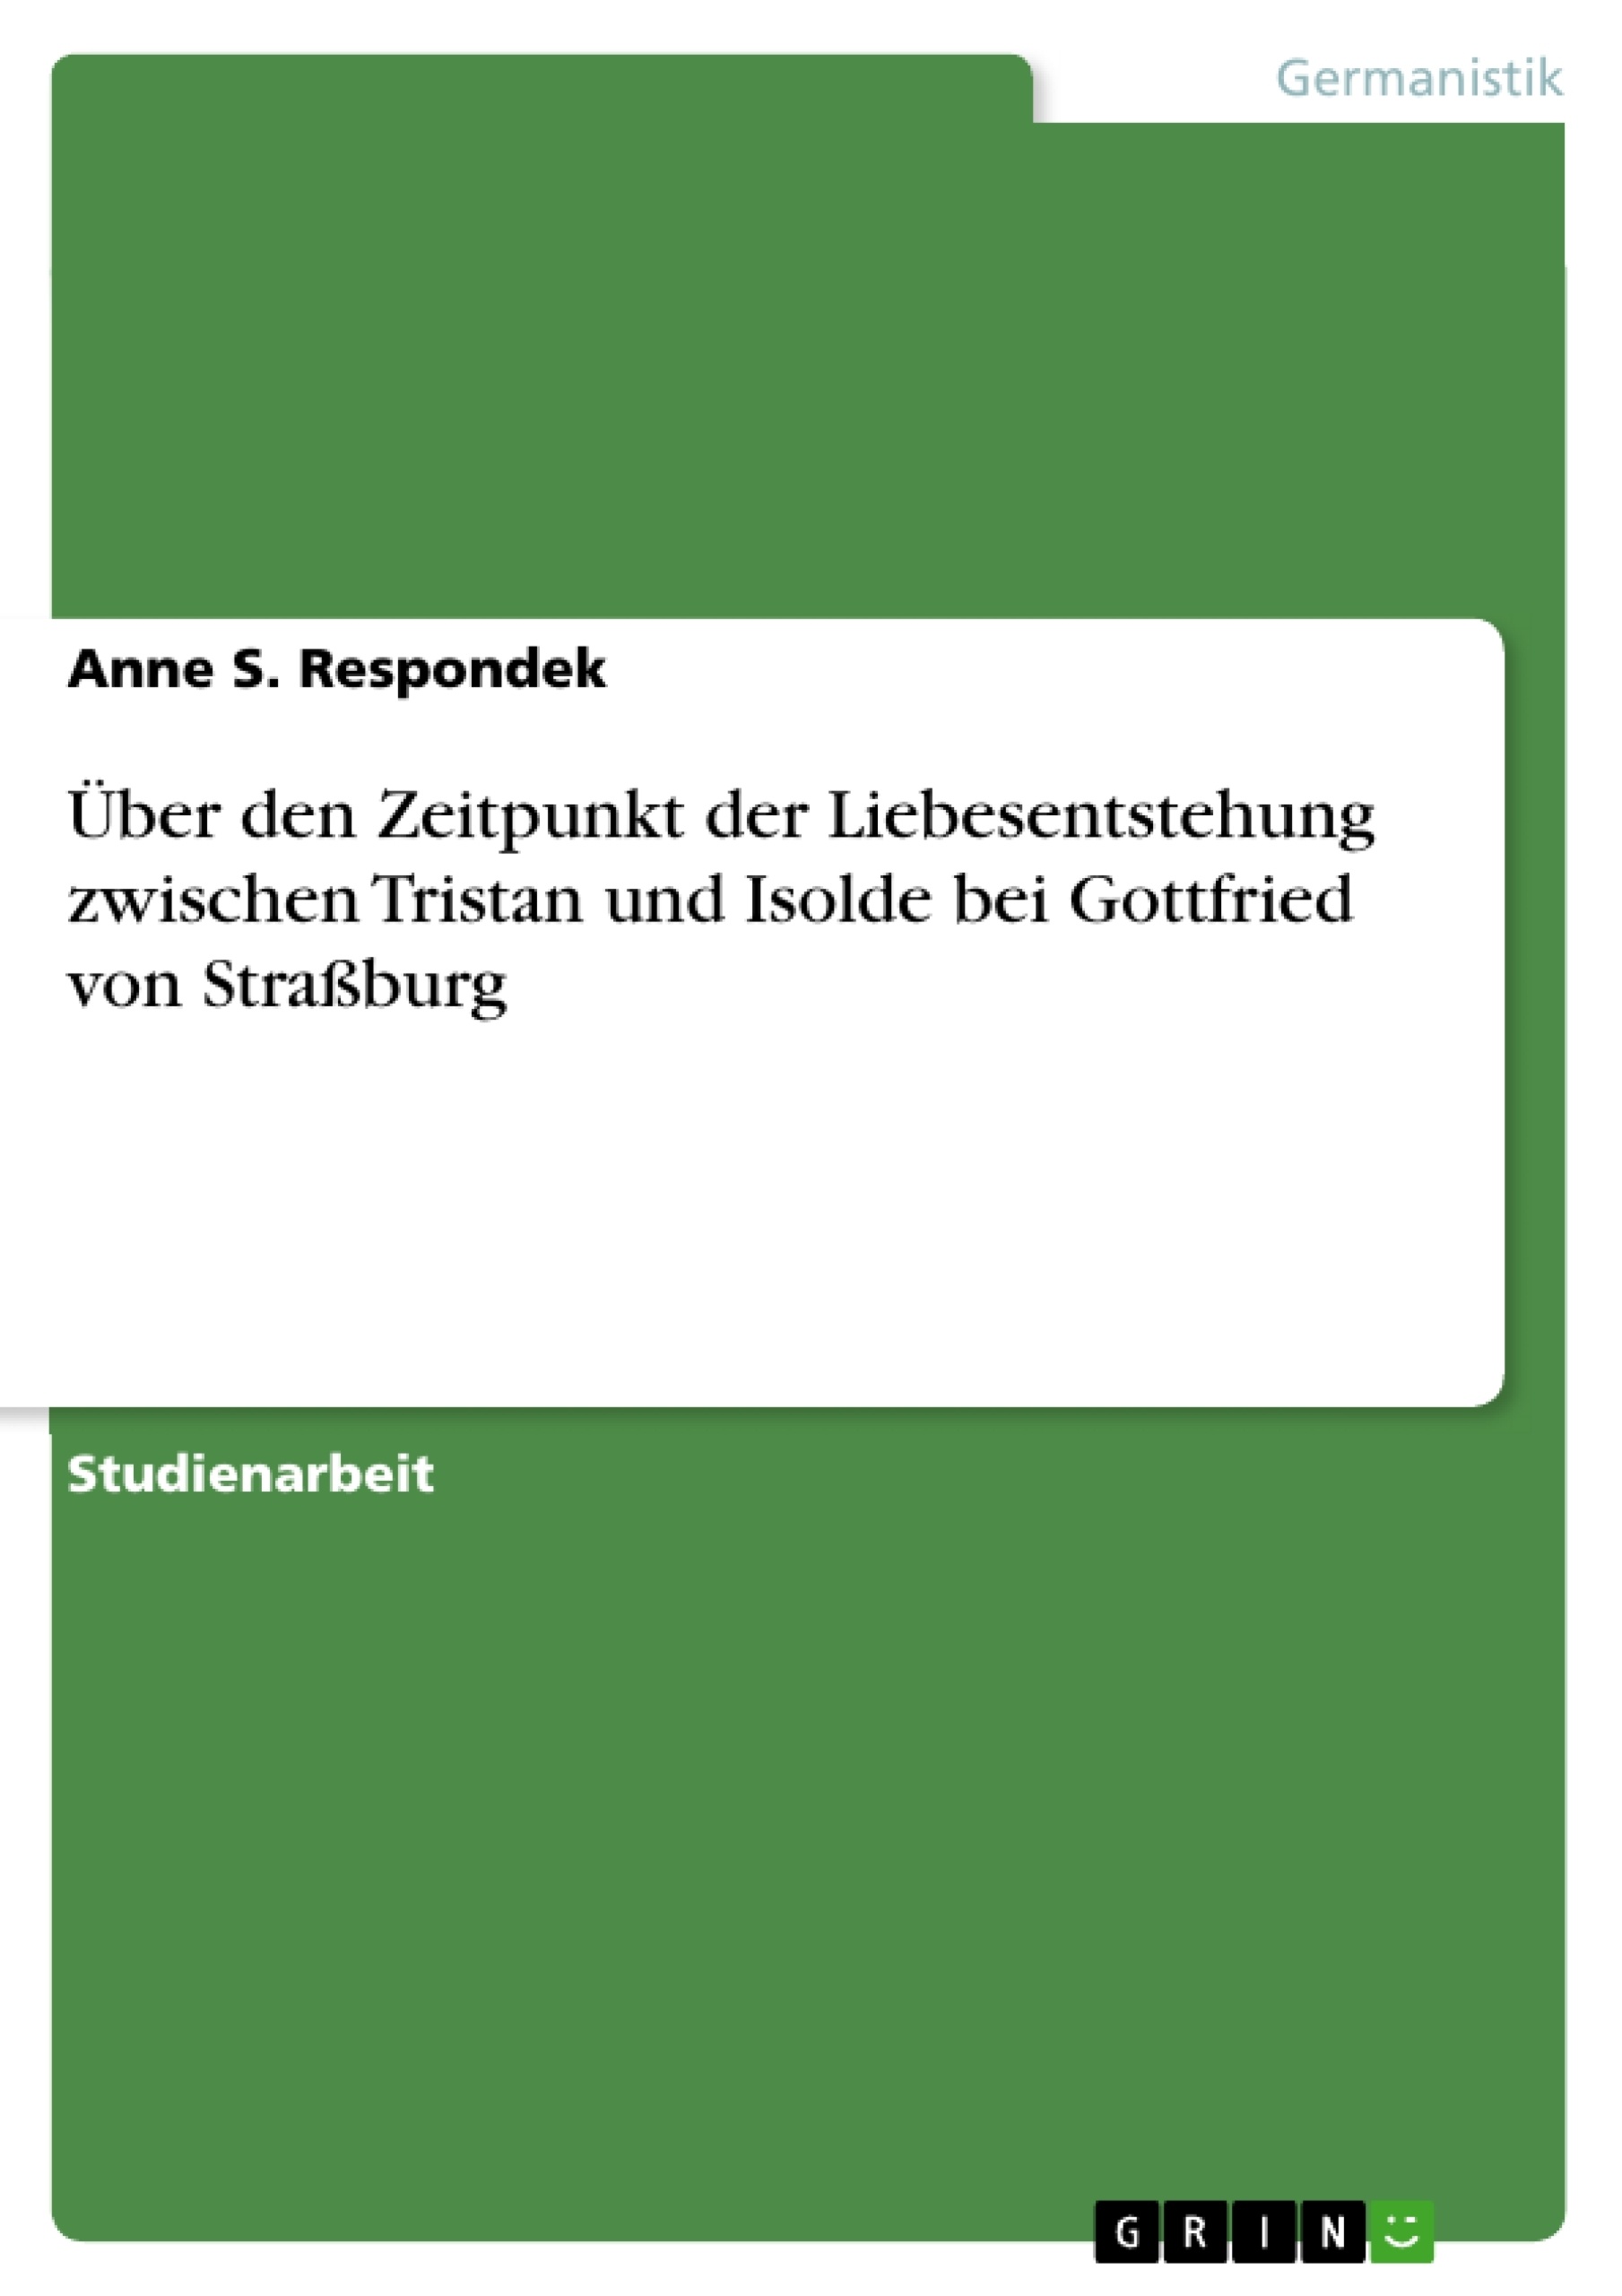 Title: Über den Zeitpunkt der Liebesentstehung zwischen Tristan und Isolde bei Gottfried von Straßburg